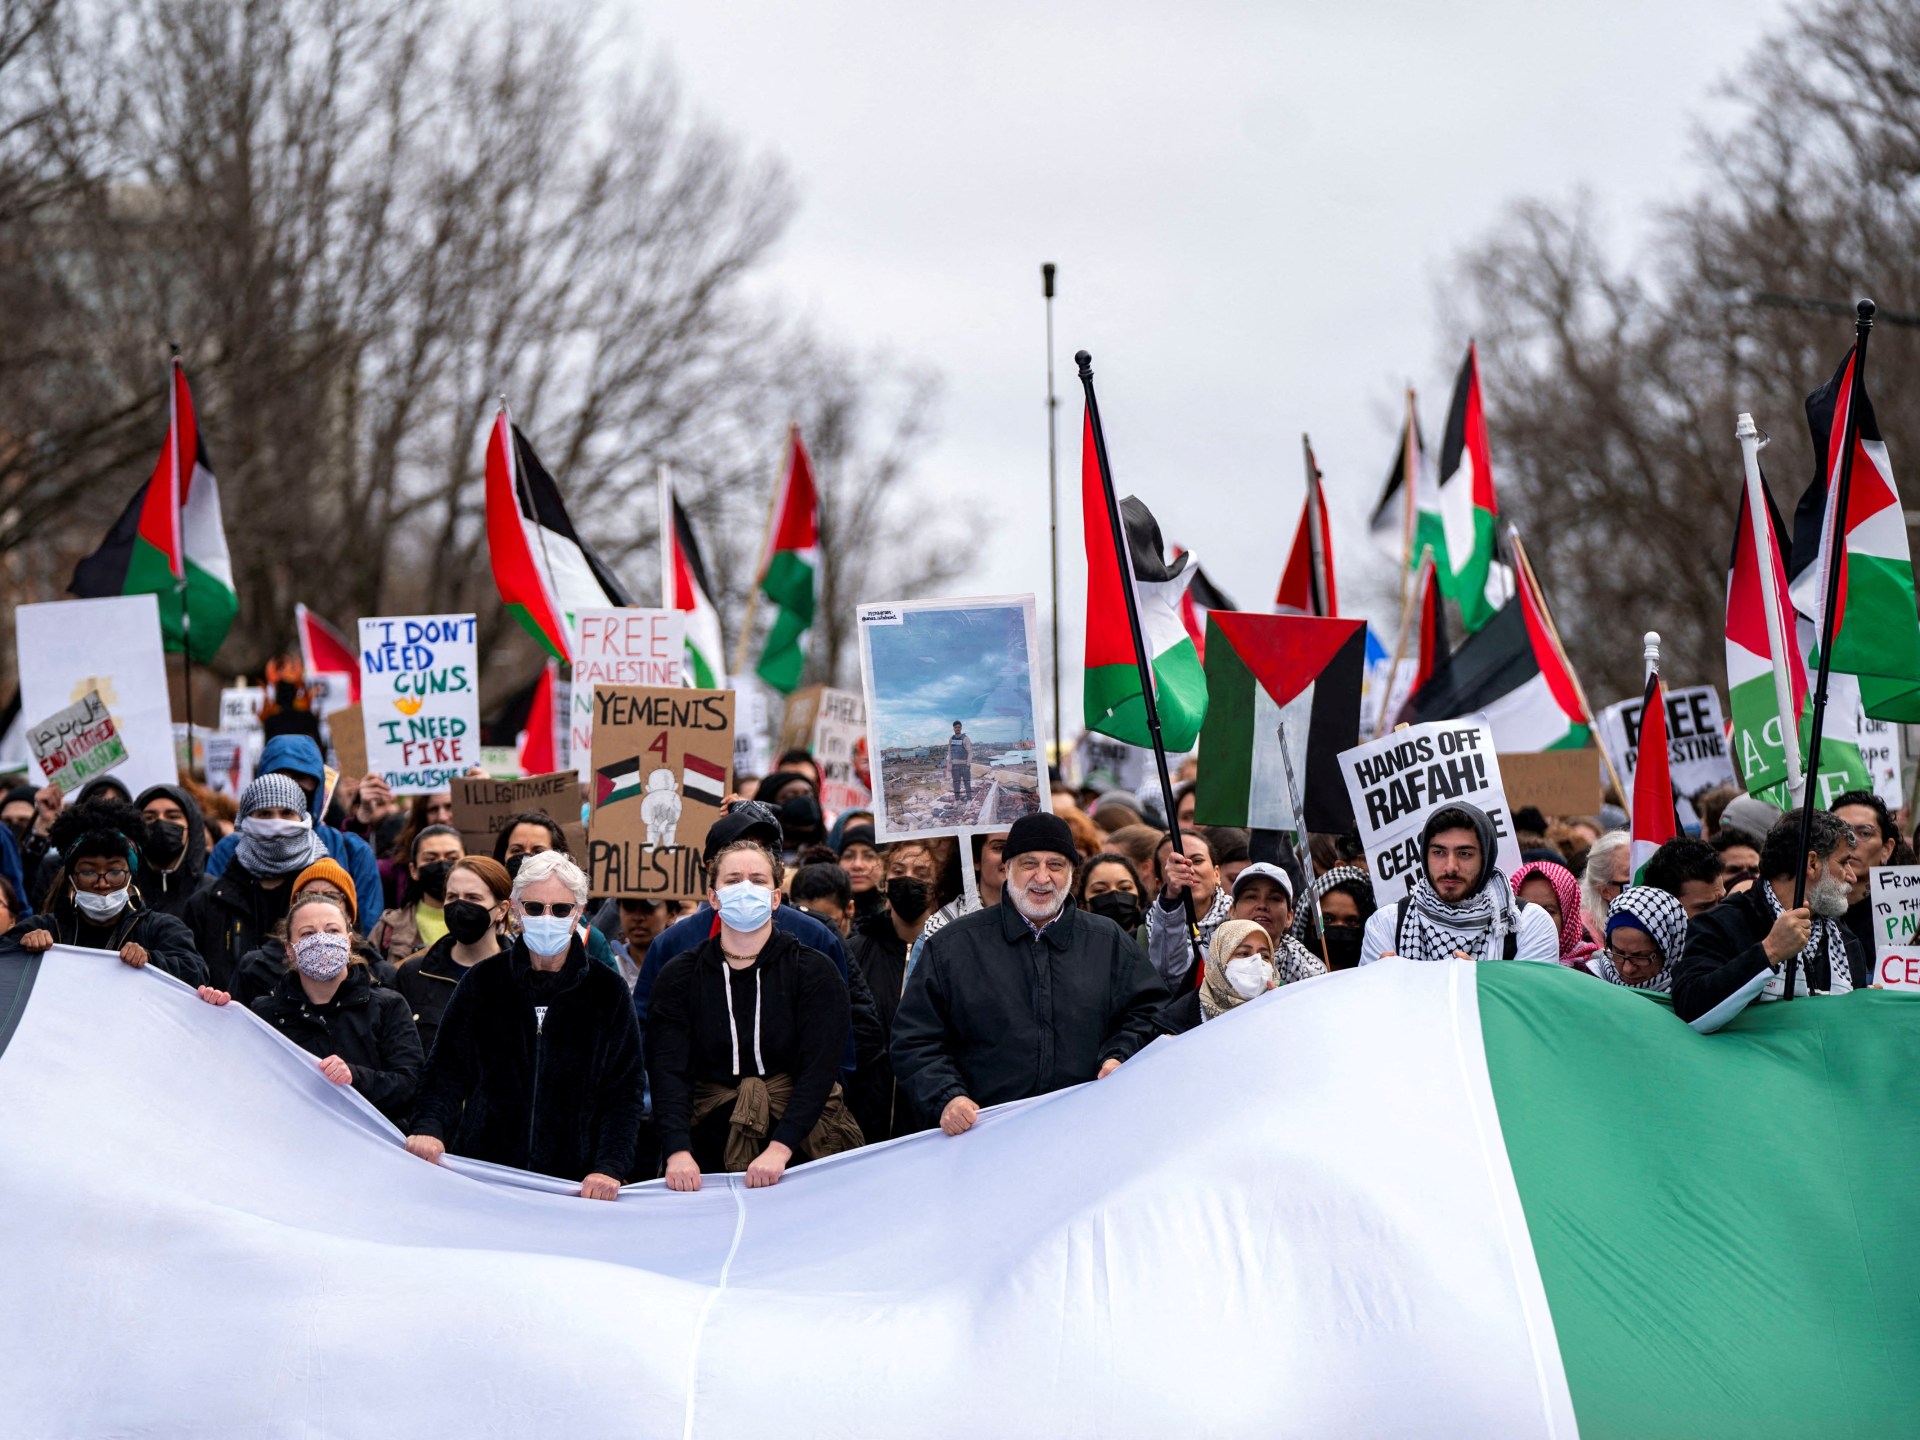 واشنطن بوست: الدعم الدولي لإسرائيل يتحوّل إلى استياء وغضب | سياسة – البوكس نيوز